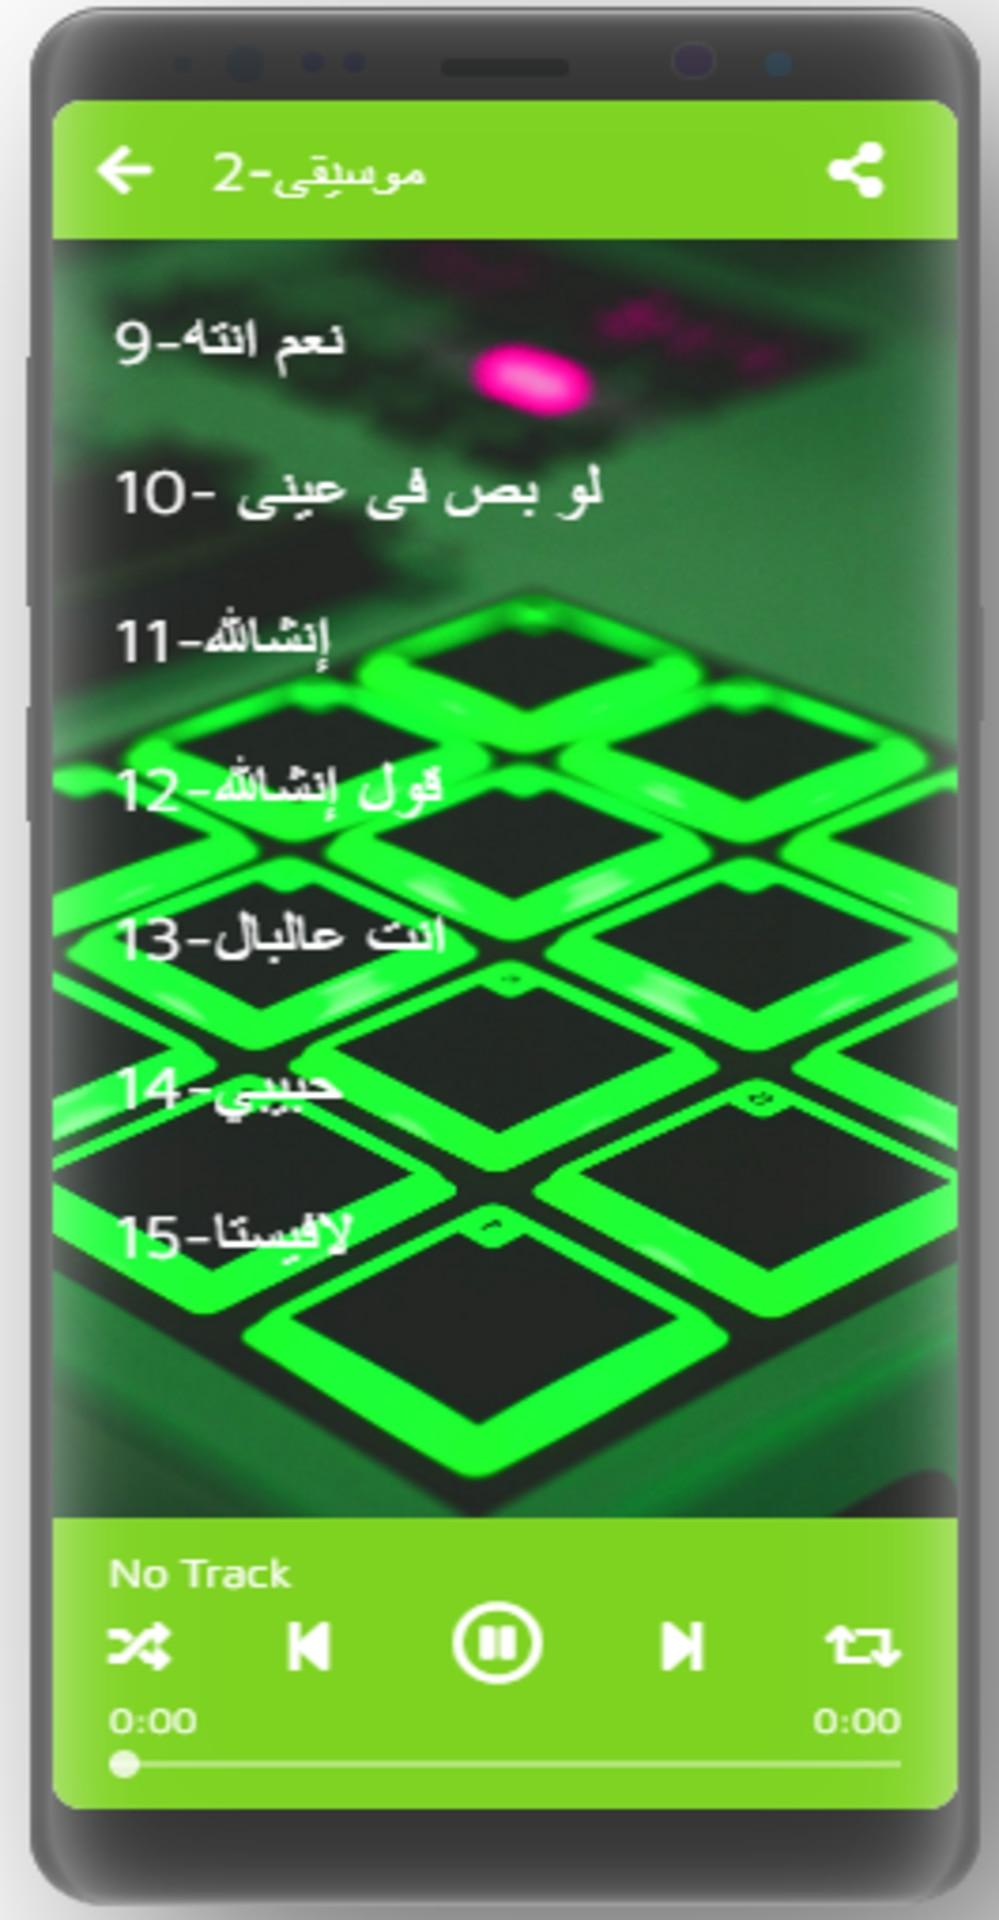 mp3 تحميل اغاني عربية مجانا APK voor Android Download